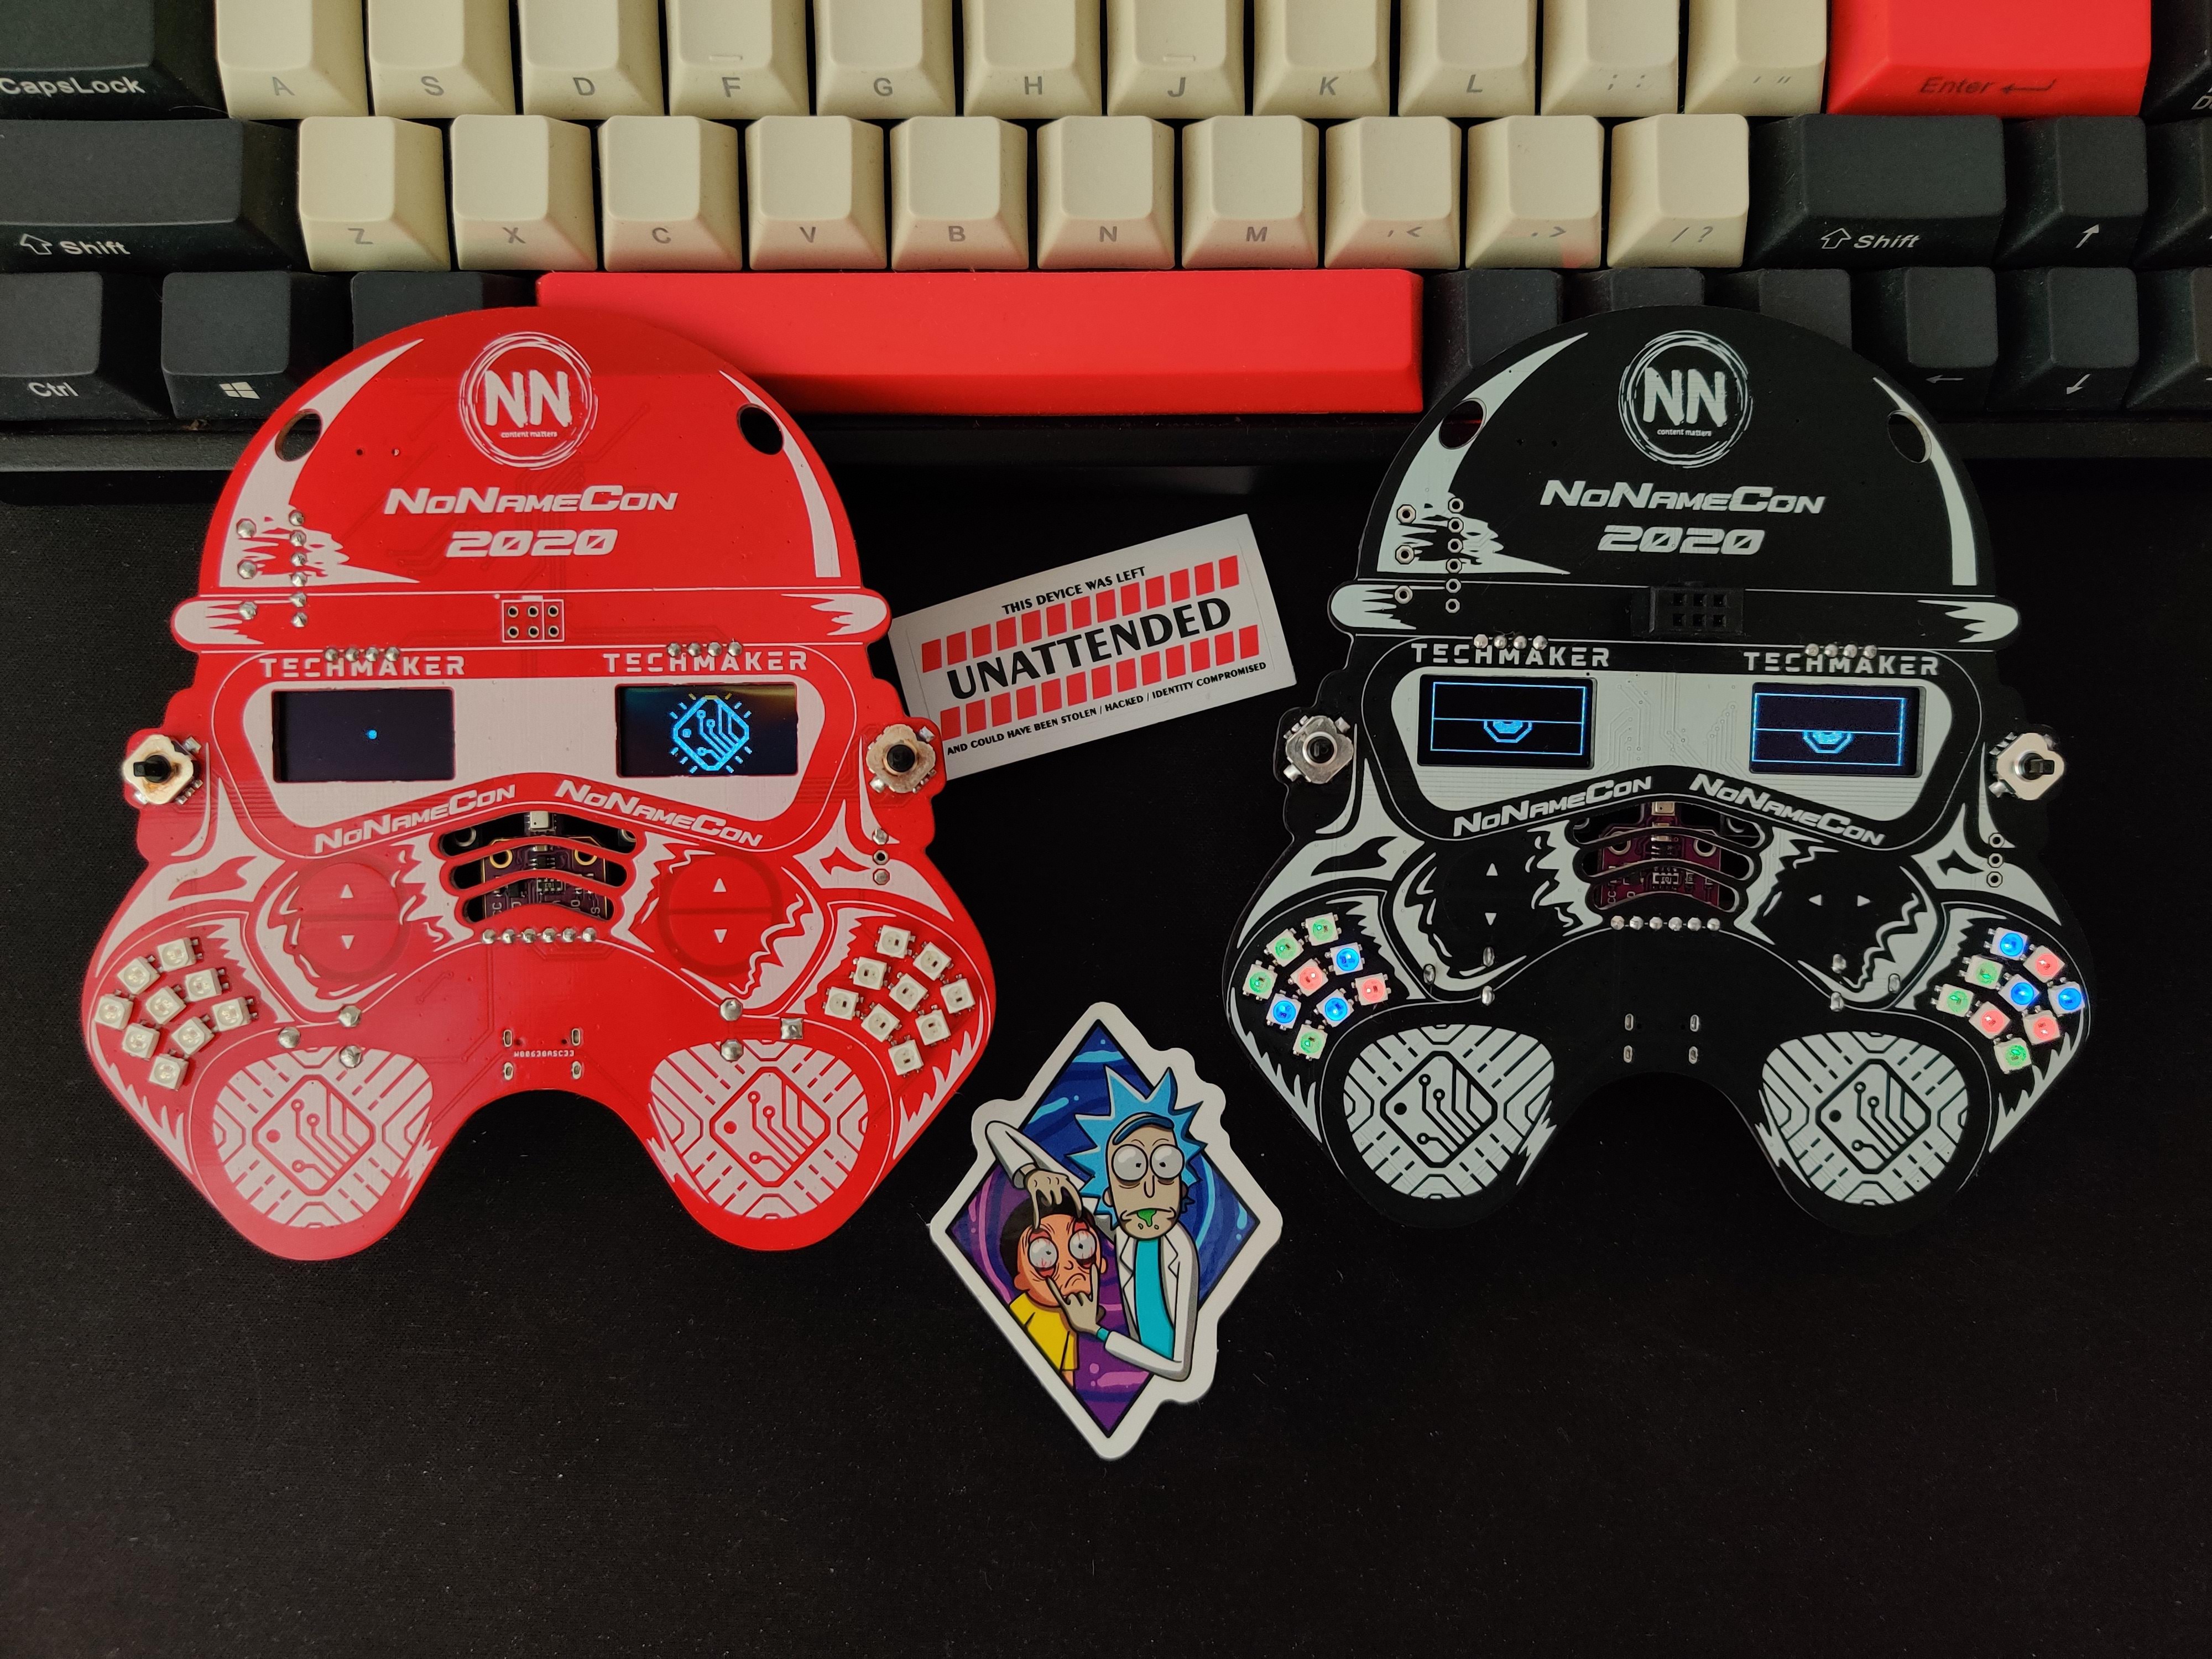 Creators Edition badges